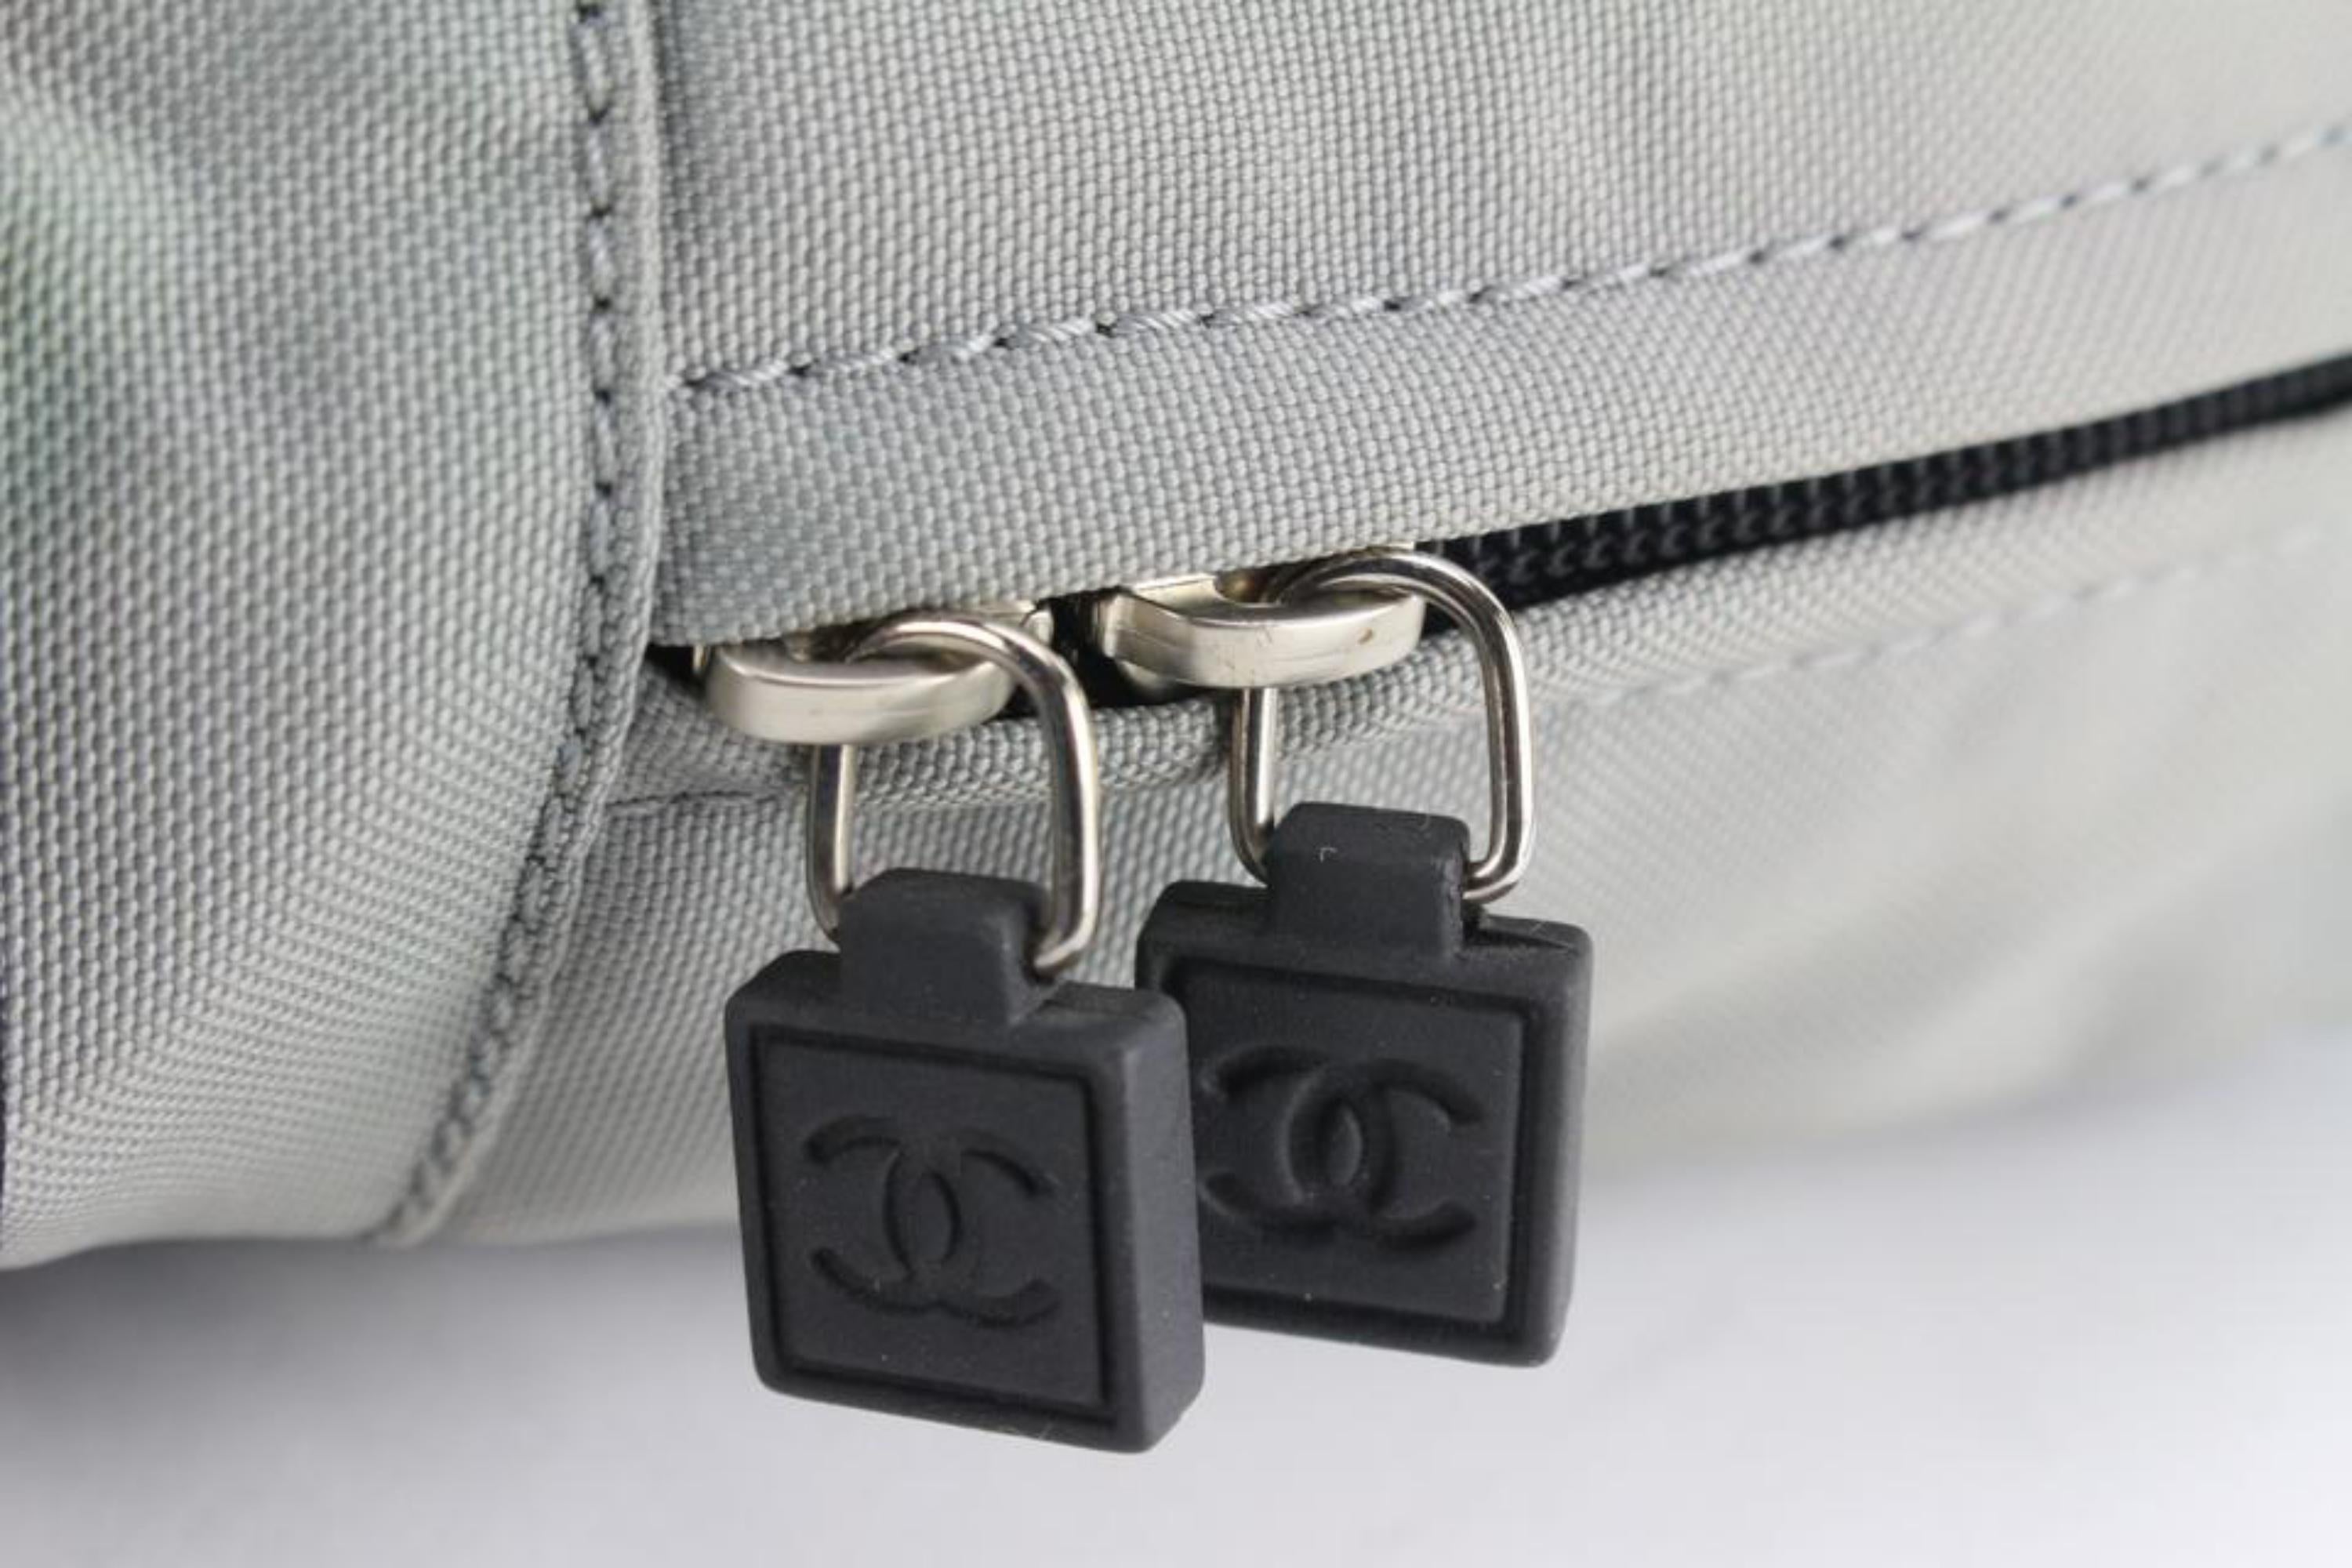 Chanel Mens CC Logo Runner Grey EU 41 / UK 7 – Luxe Collective